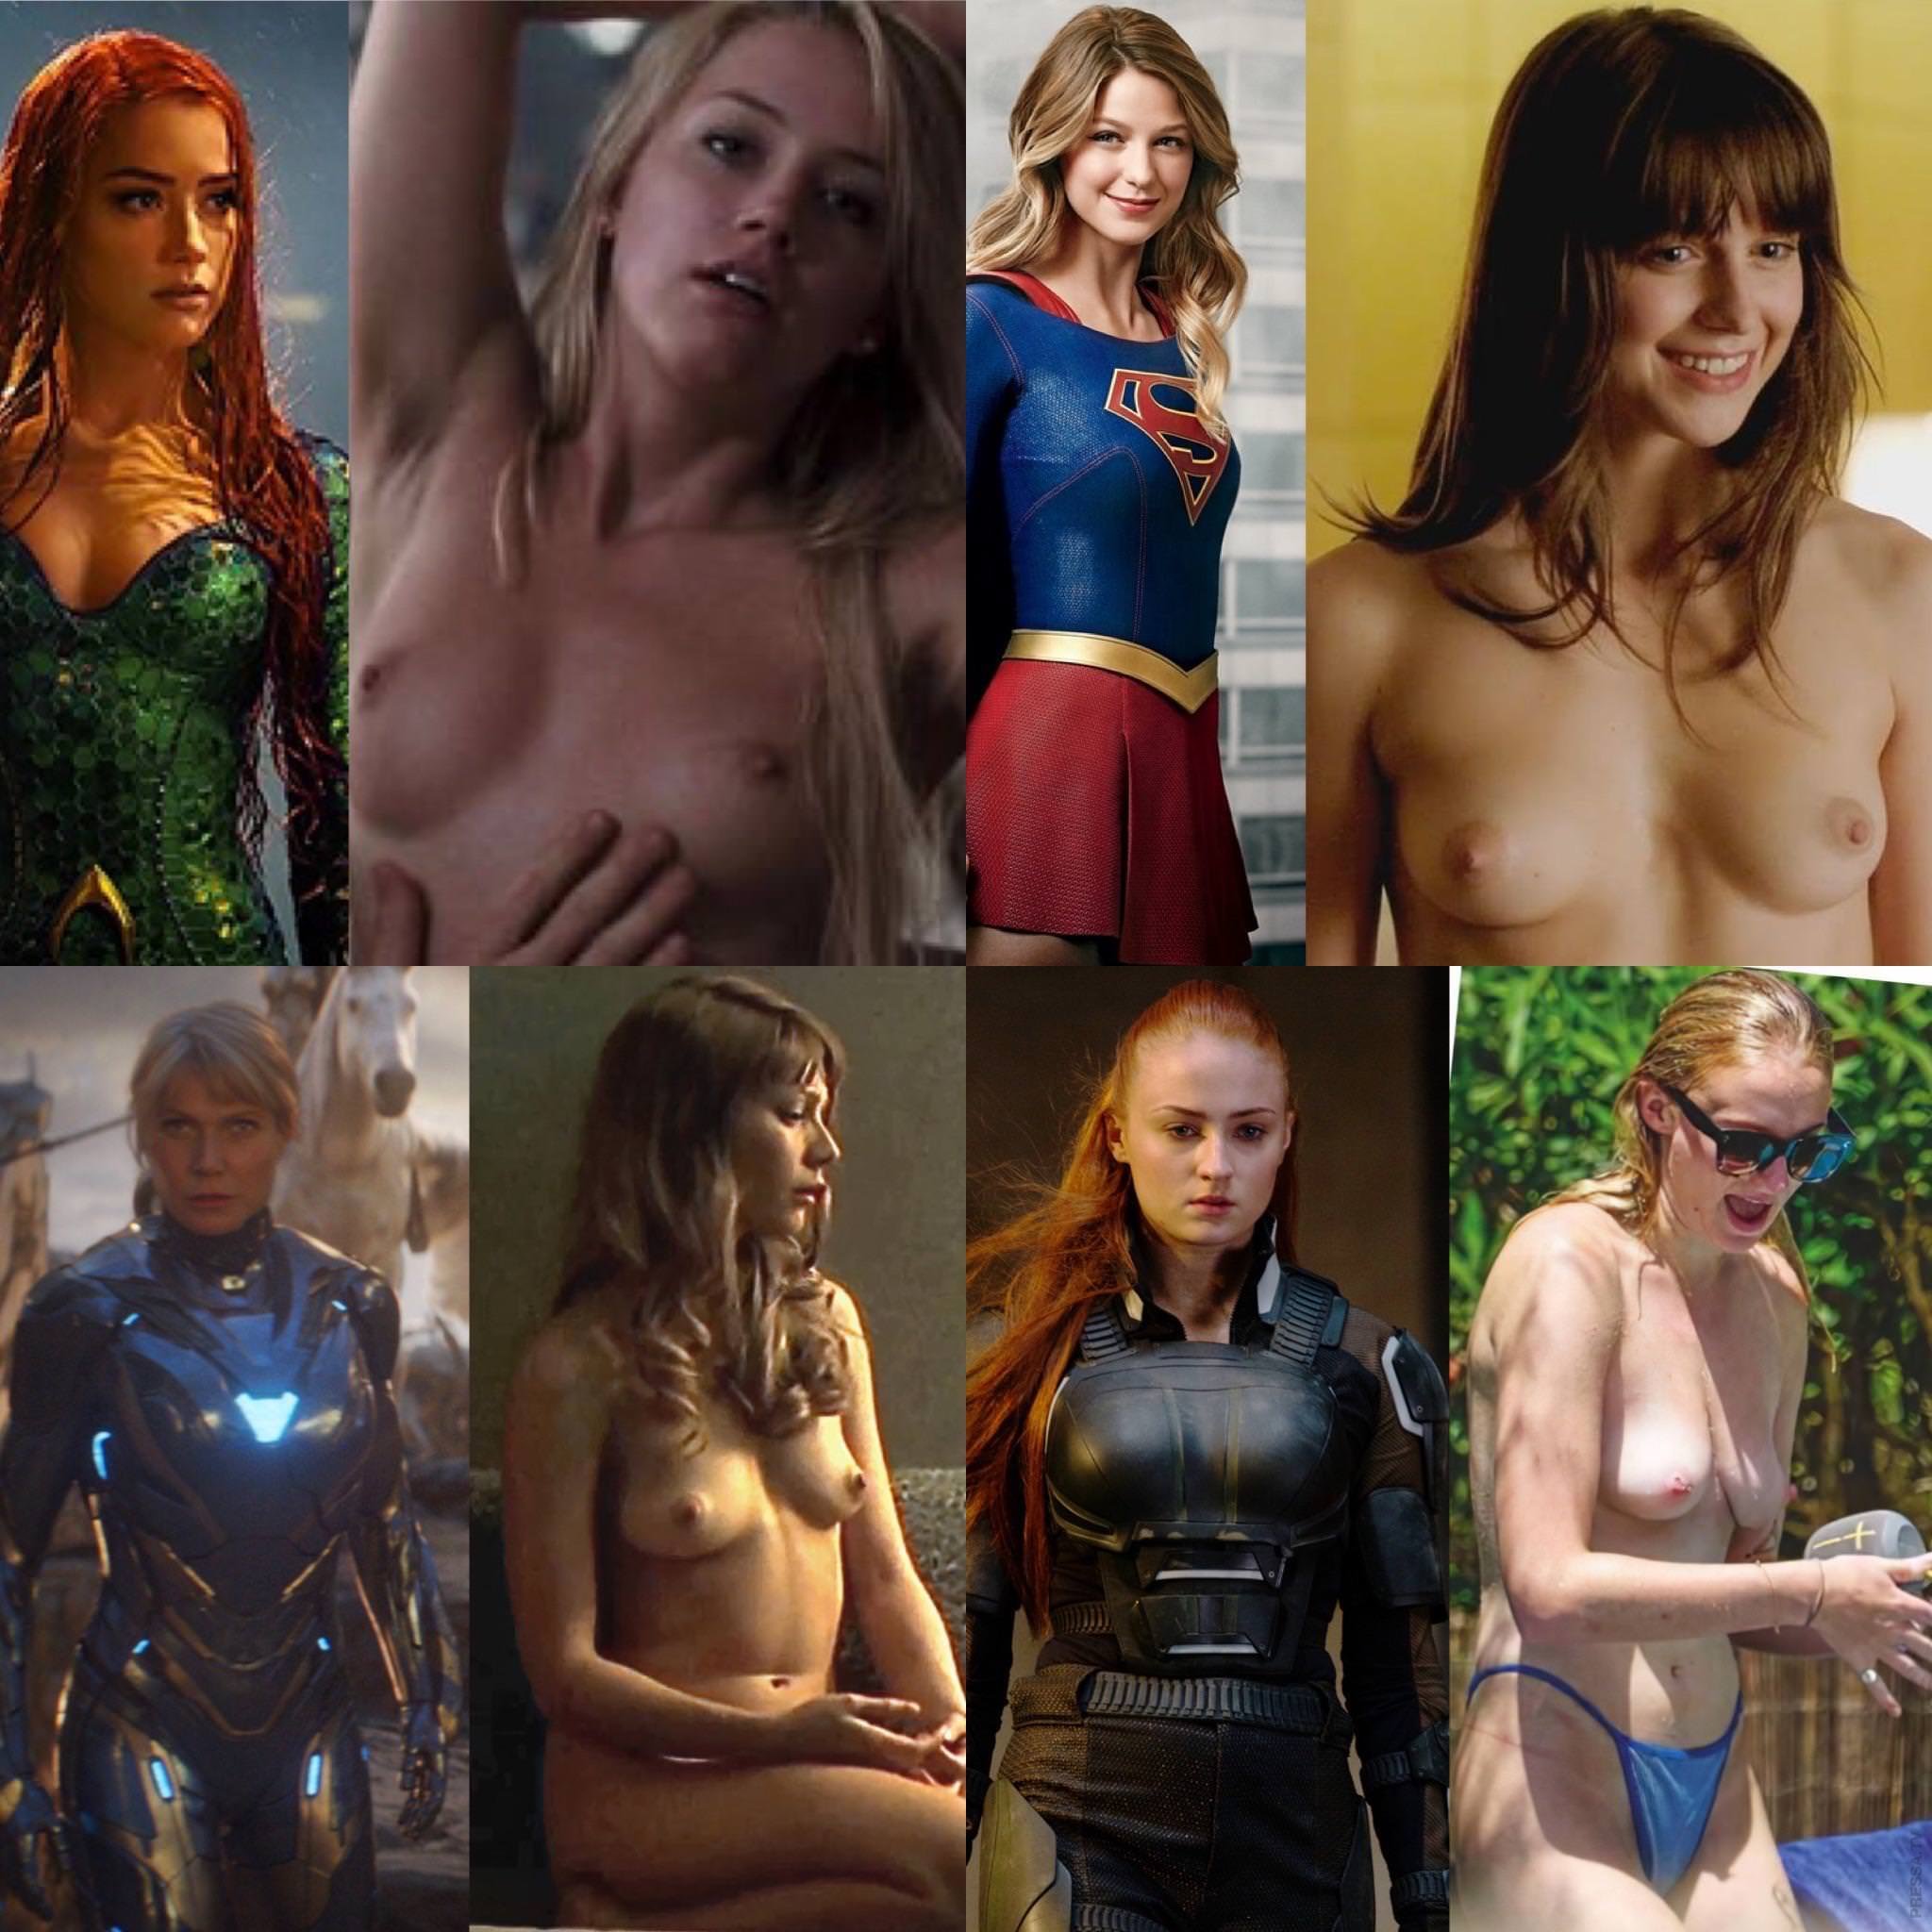 Superhero movie nudity